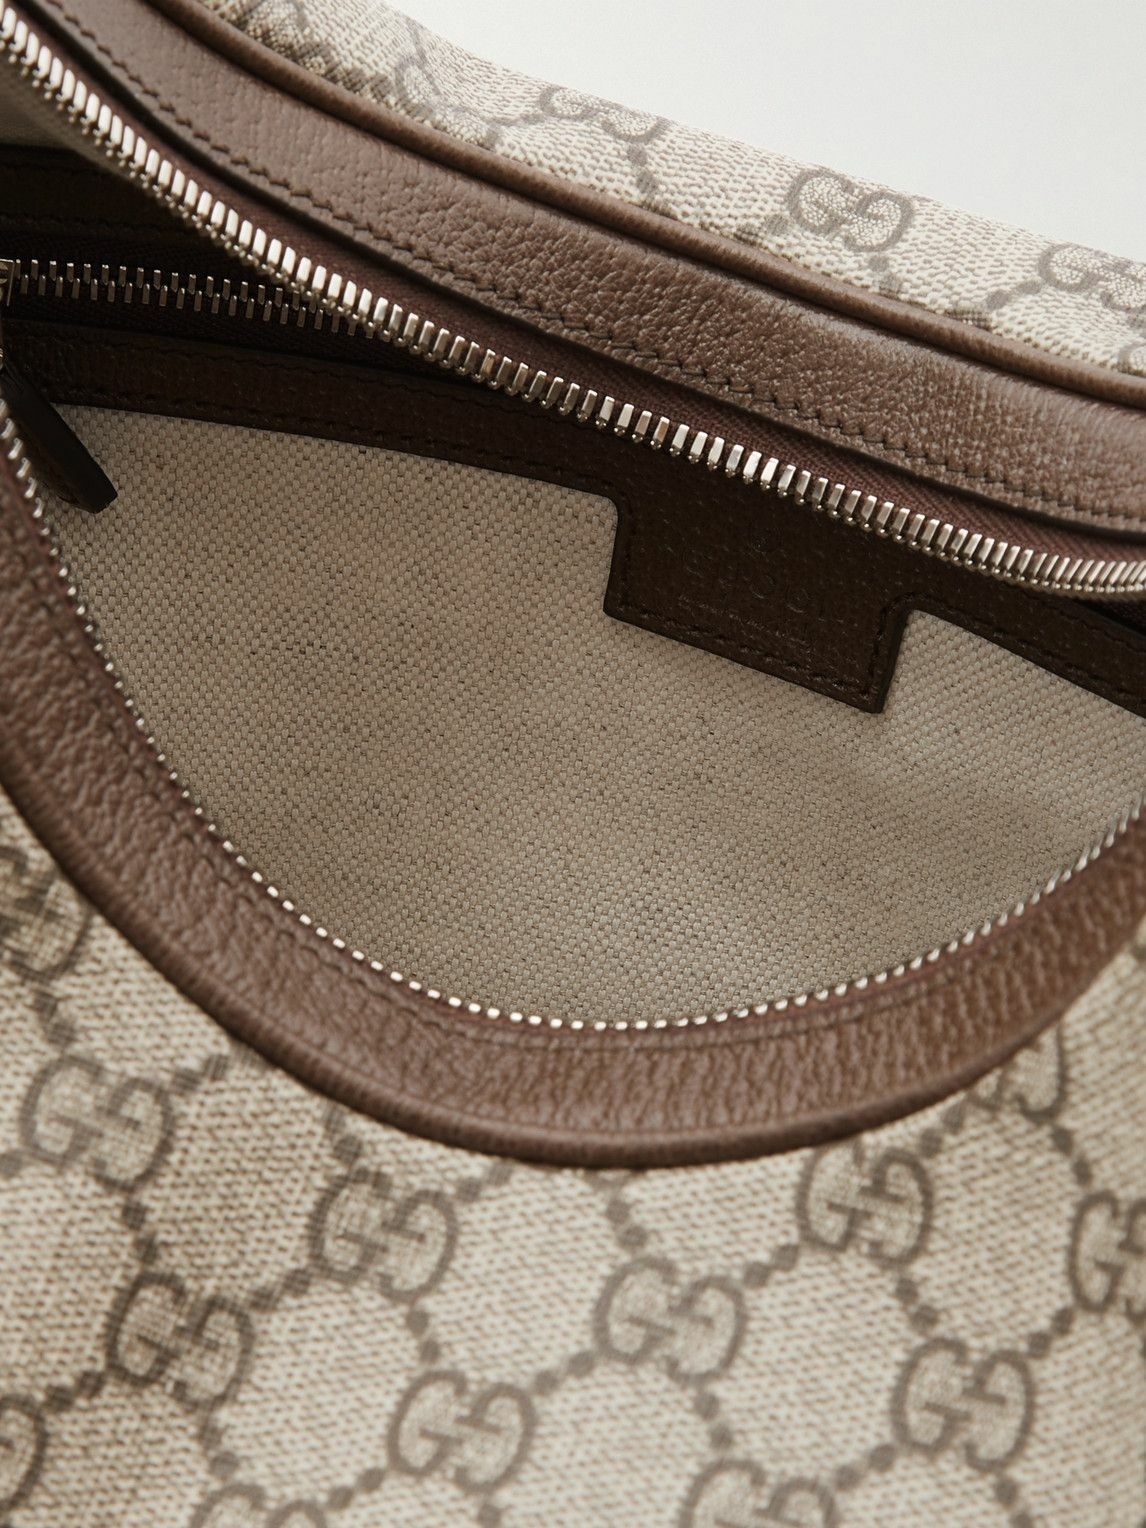 Attache webbing-trimmed leather shoulder bag